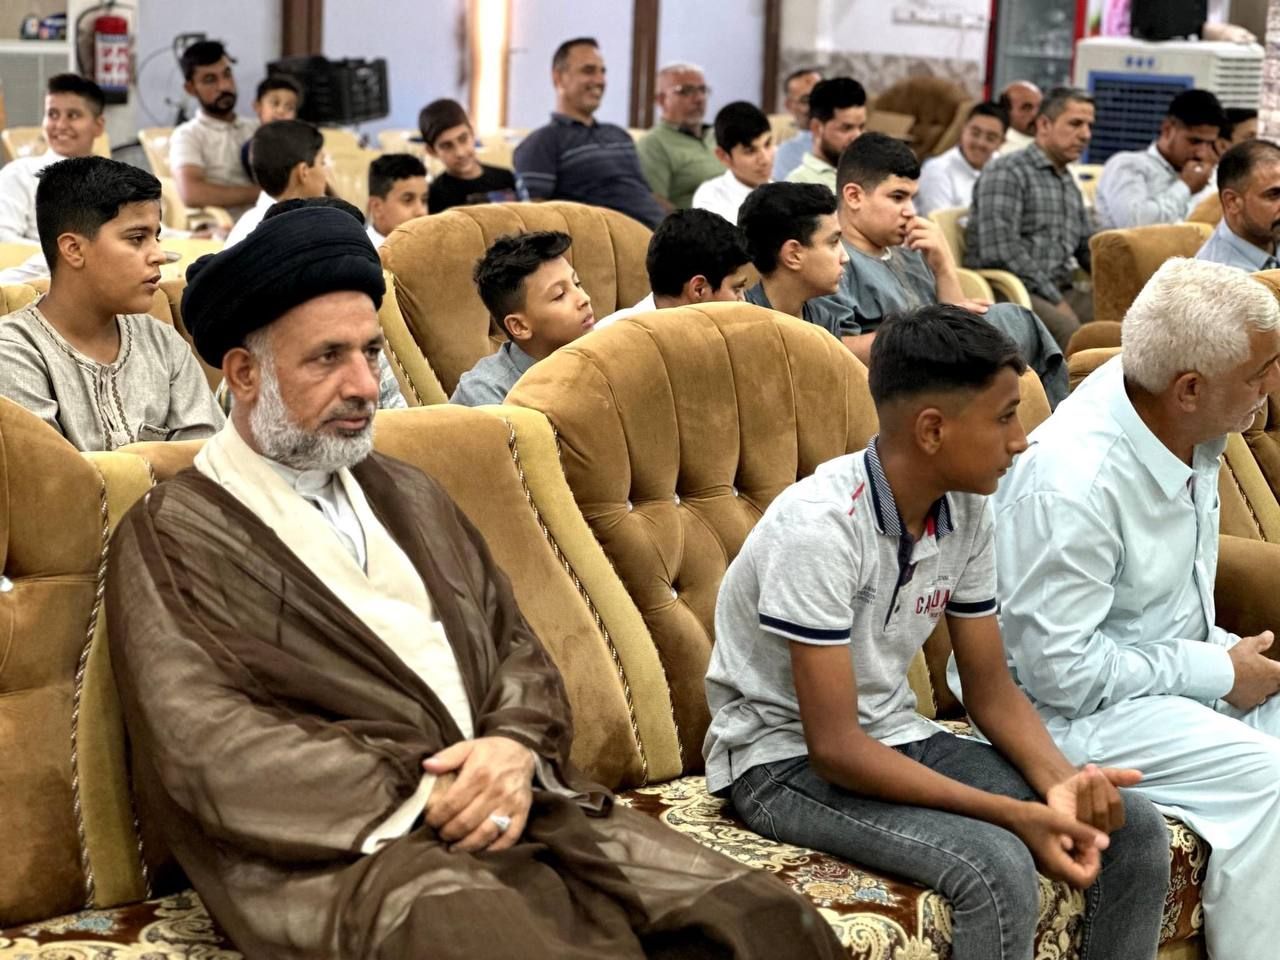 المَجمَع العلميّ يطلق مسابقة الغدير القرآنية بنسختها الثانية في قضاء الهندية